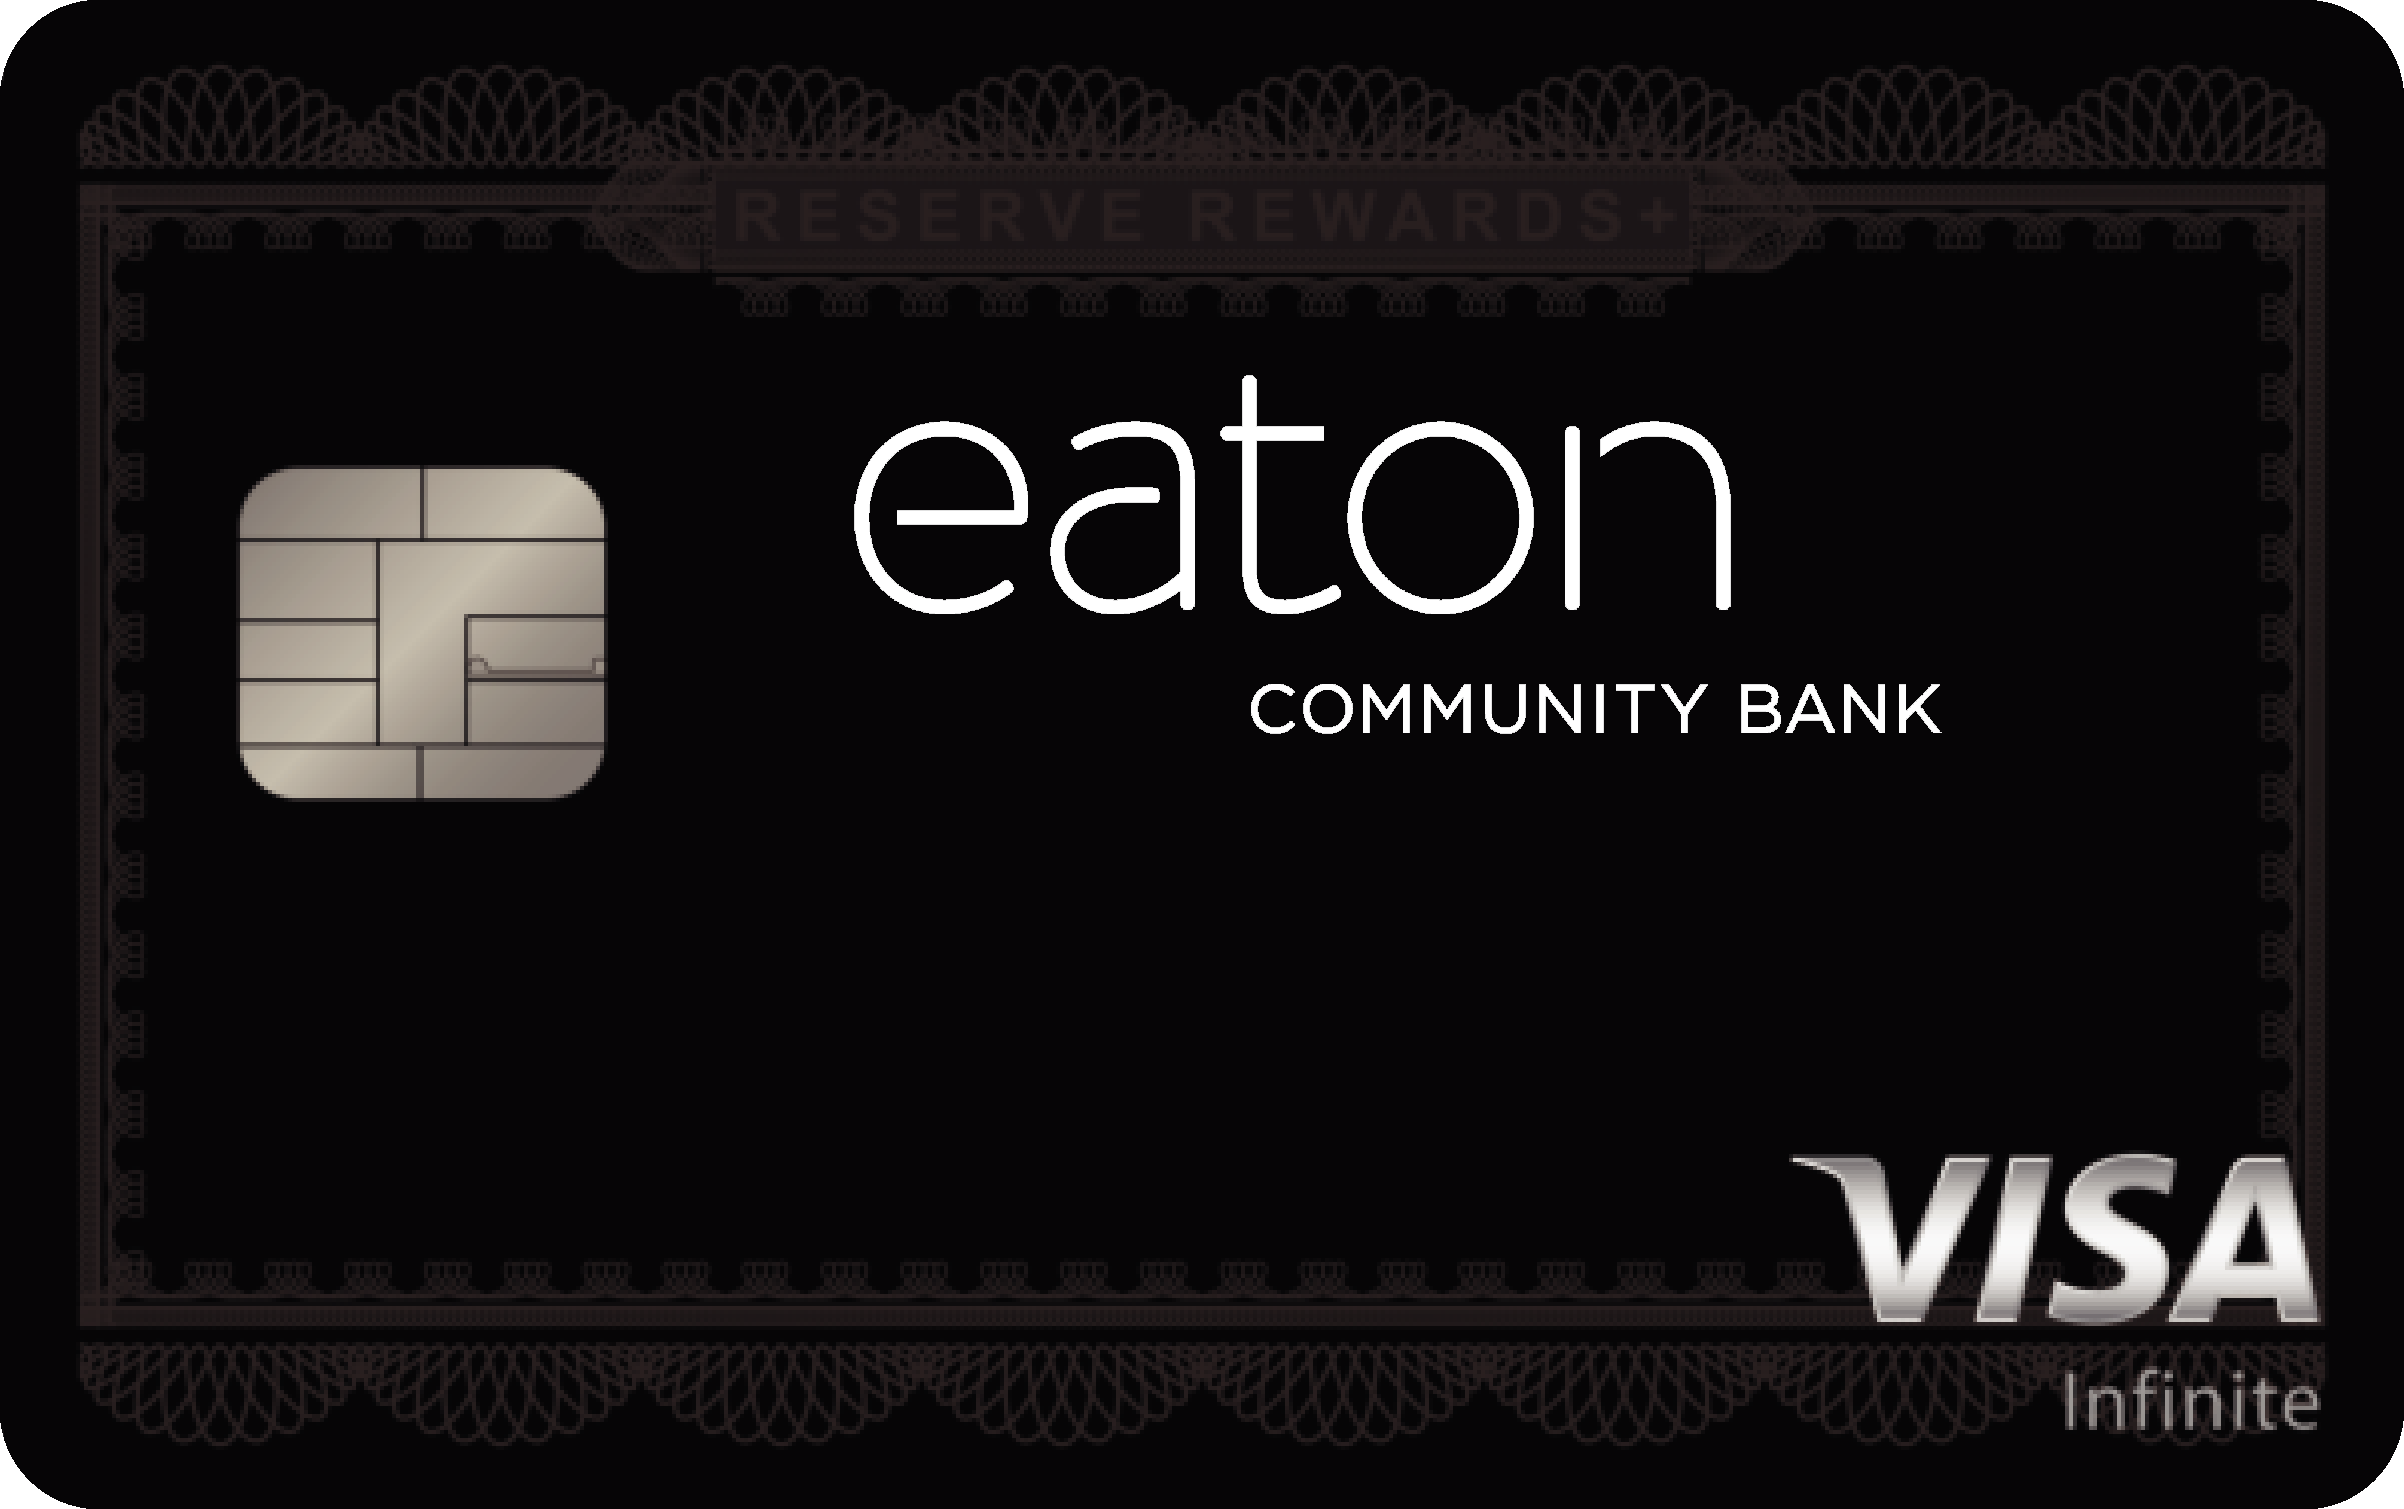 Eaton Community Bank